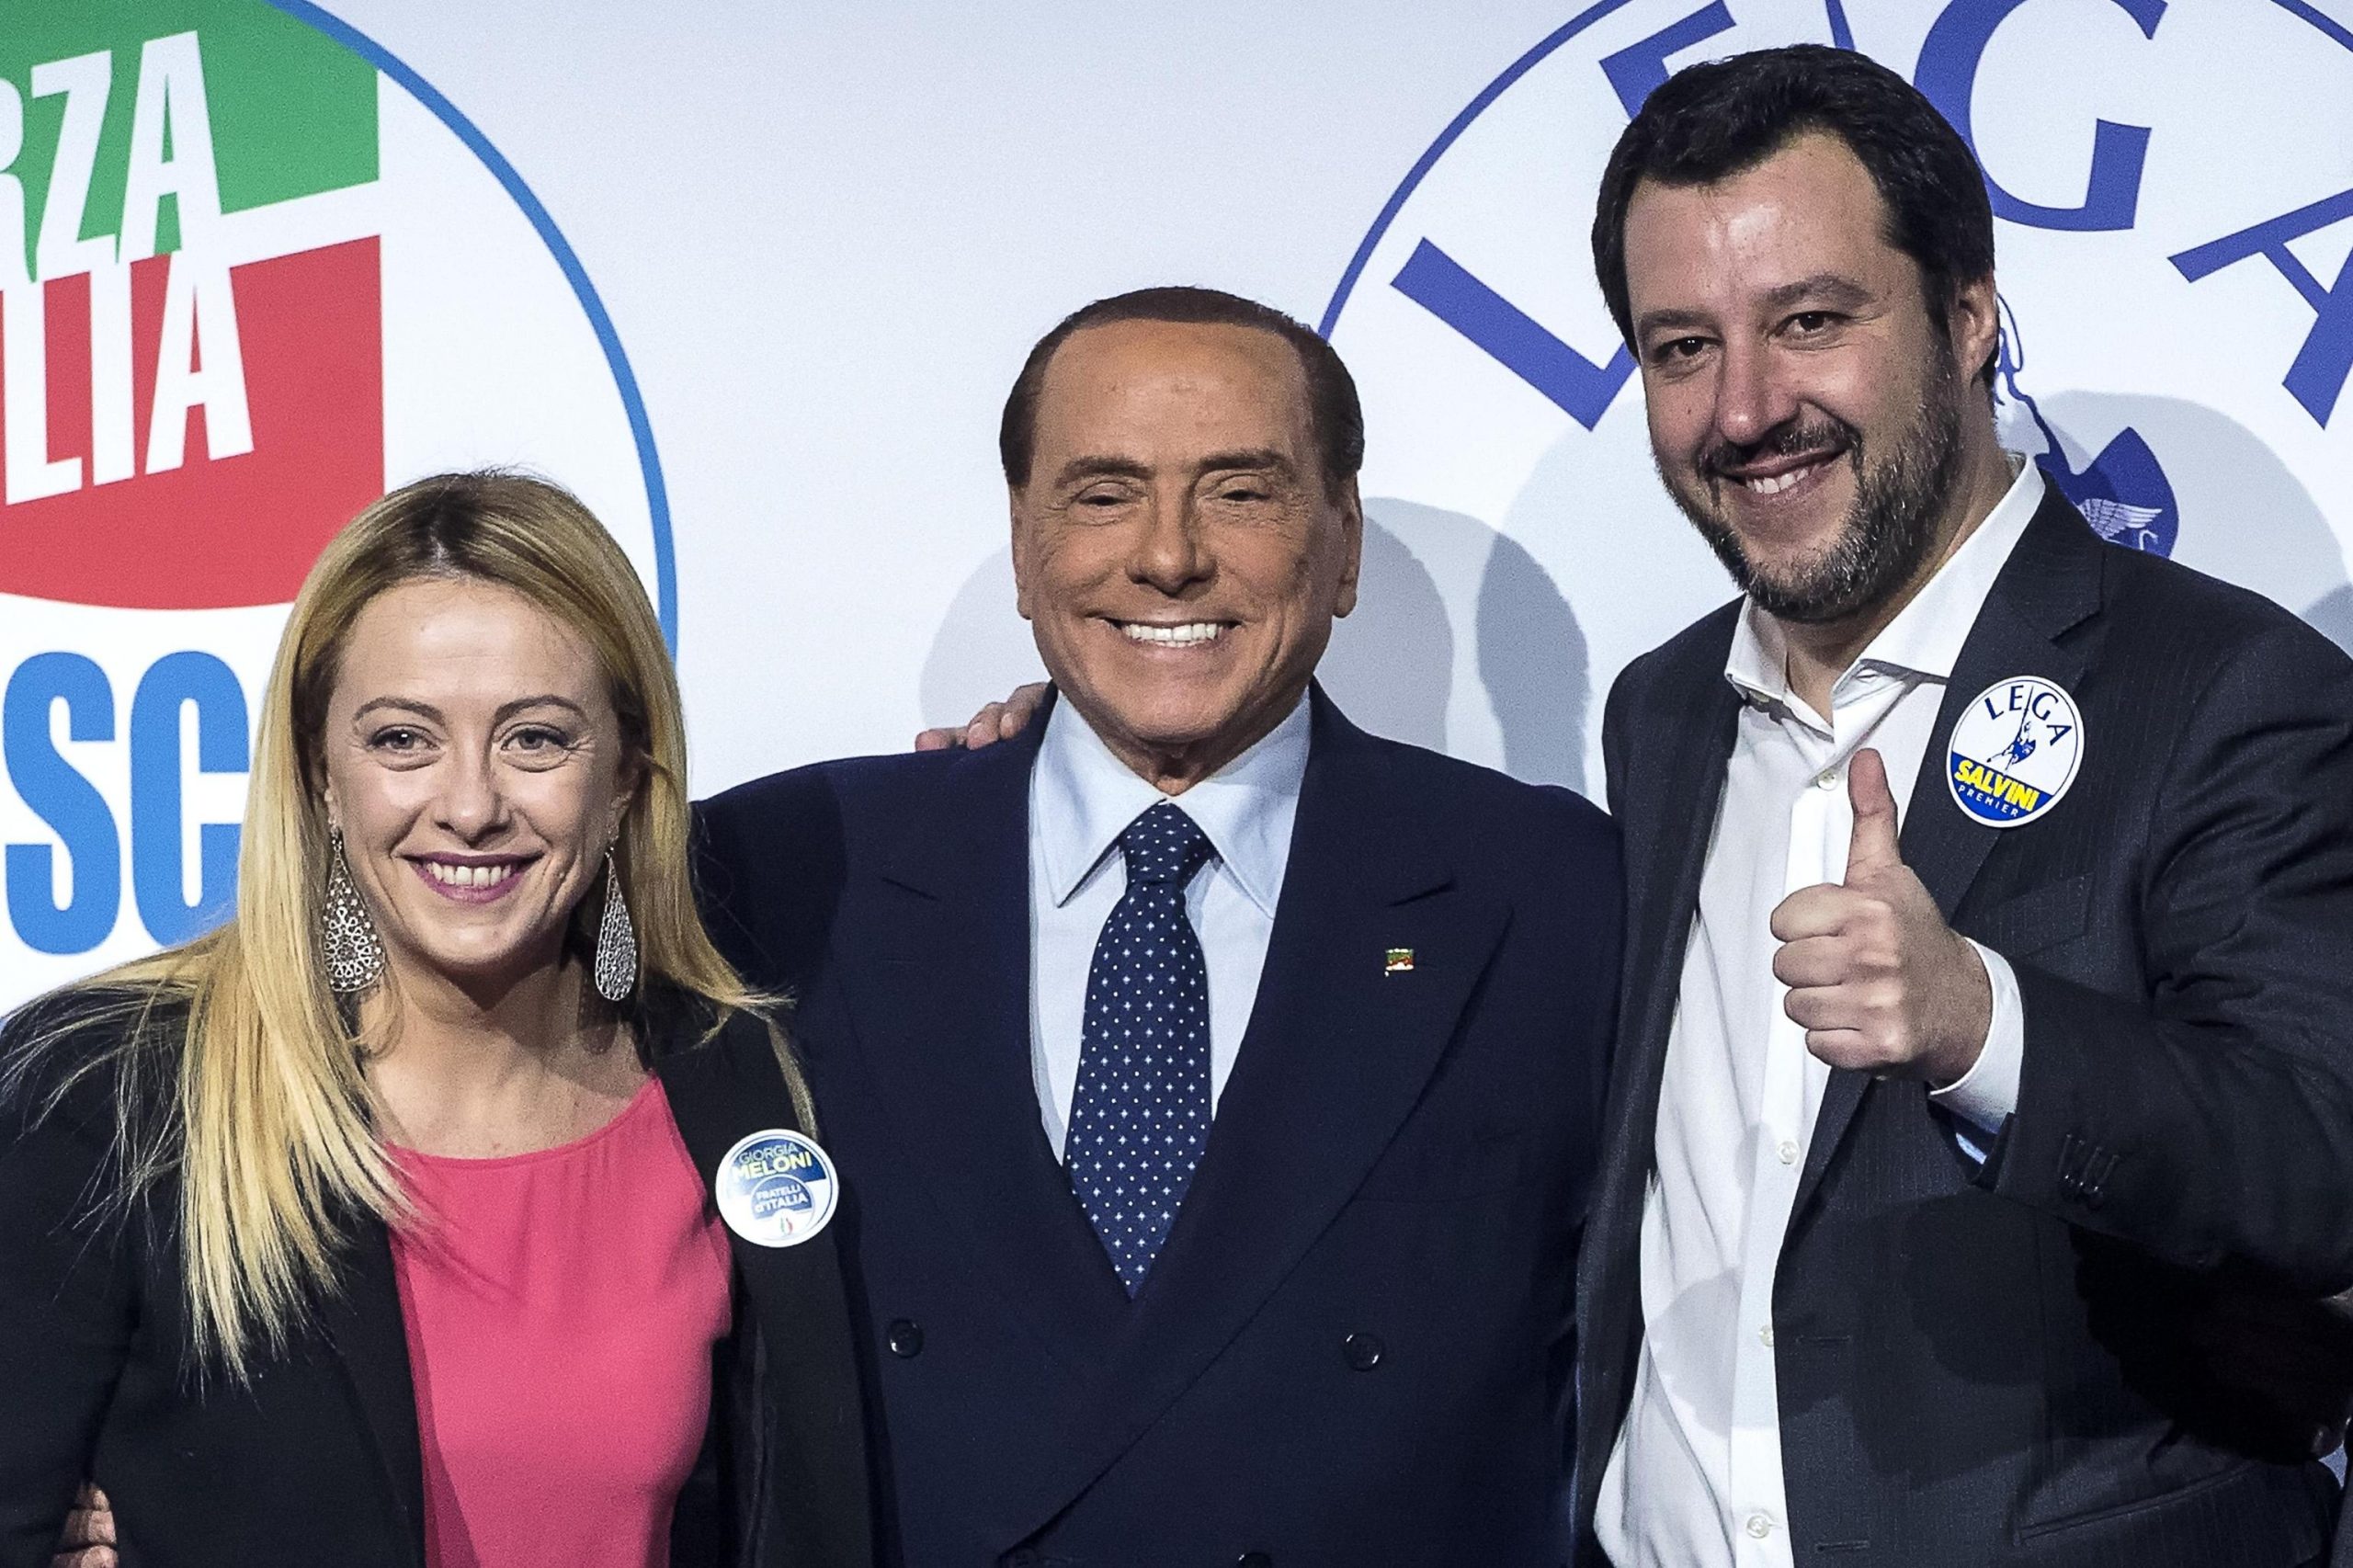 A destra iniziano gli scambi per Berlusconi al Quirinale, Tajani: "Non ci opporremo a Meloni o Salvini premier"